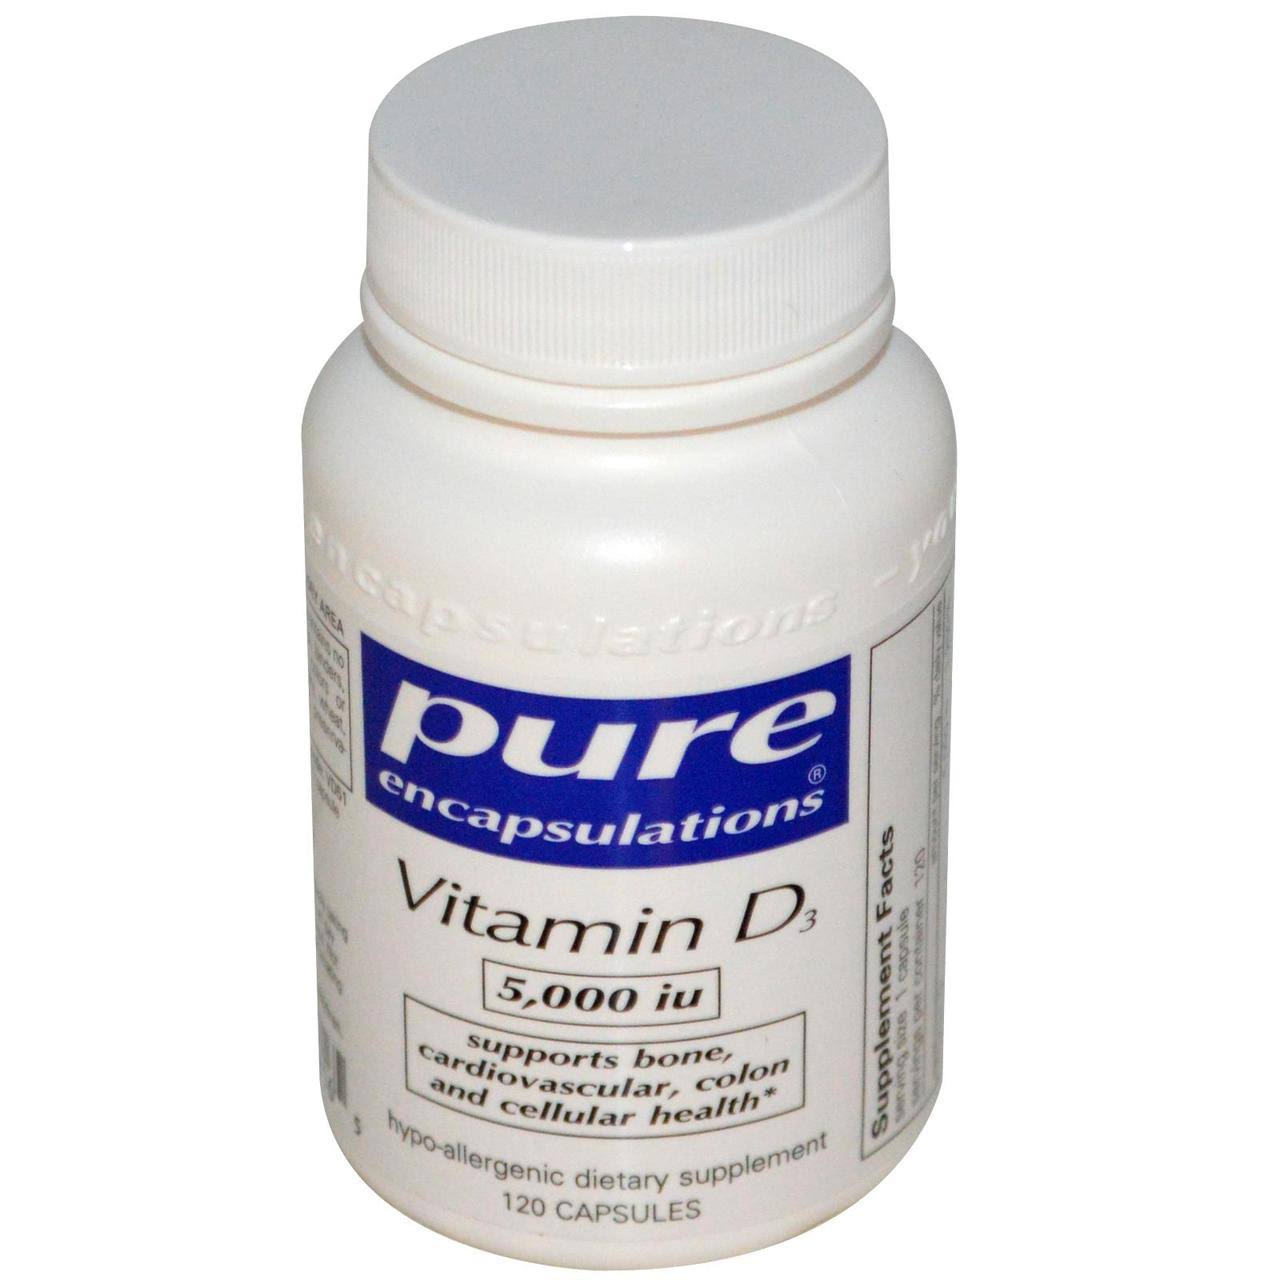 Pure Encapsulations Vitamin D3 5,000 IU Vegetable Capsules - x120